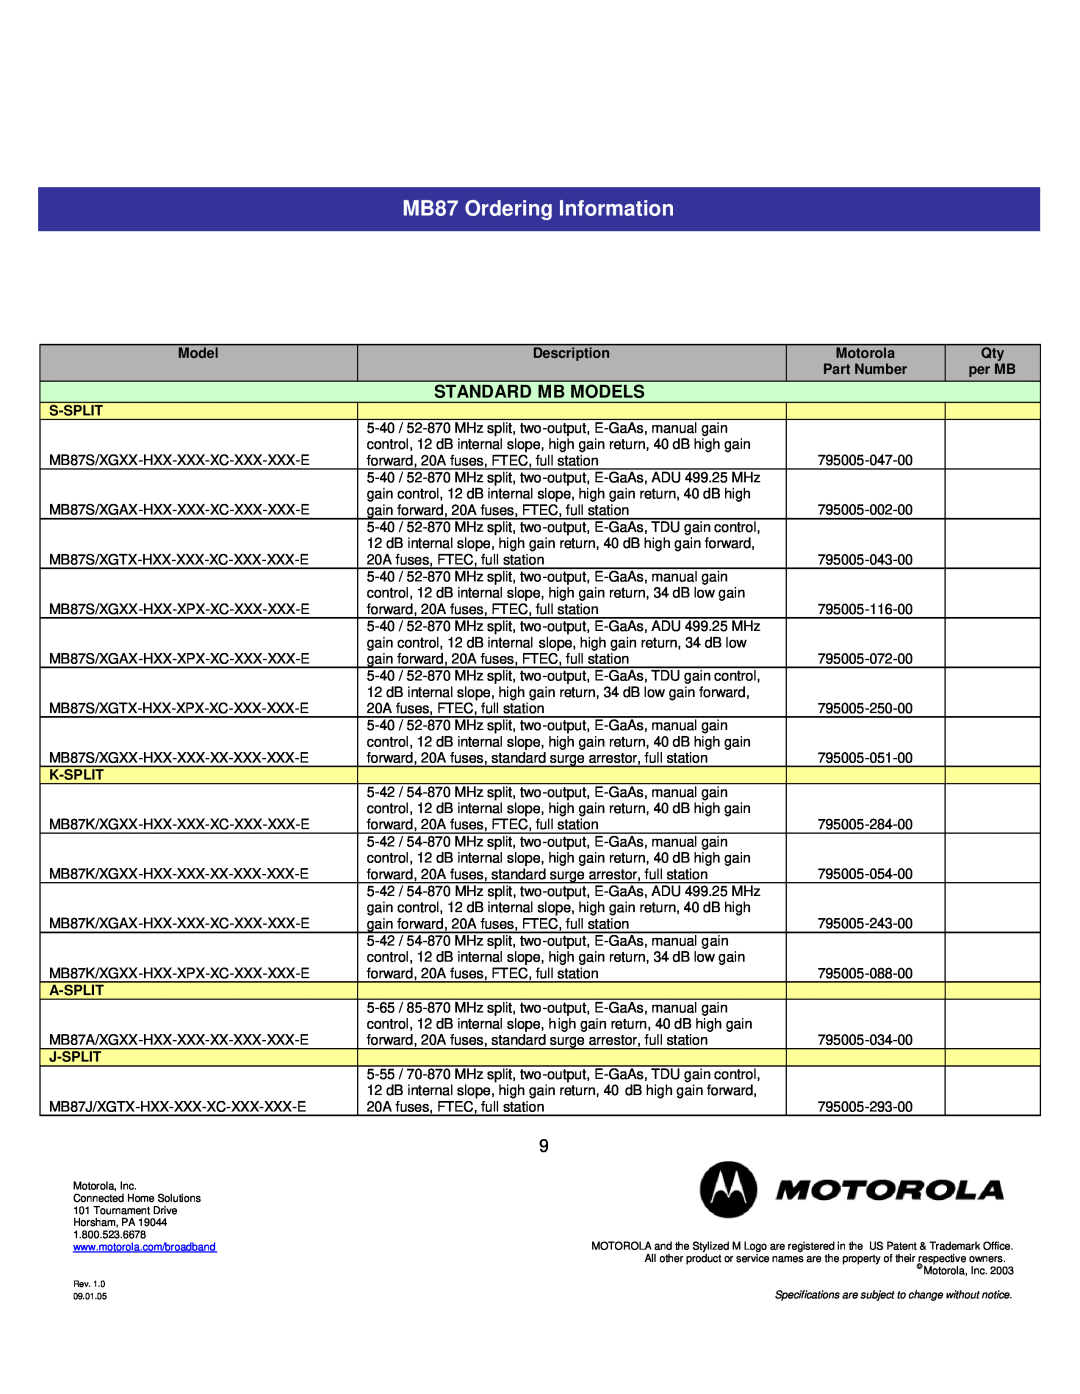 Motorola MB87 Ordering Information, Standard Mb Models, Description, Part Number, per MB, S-Split, K-Split, A-Split 